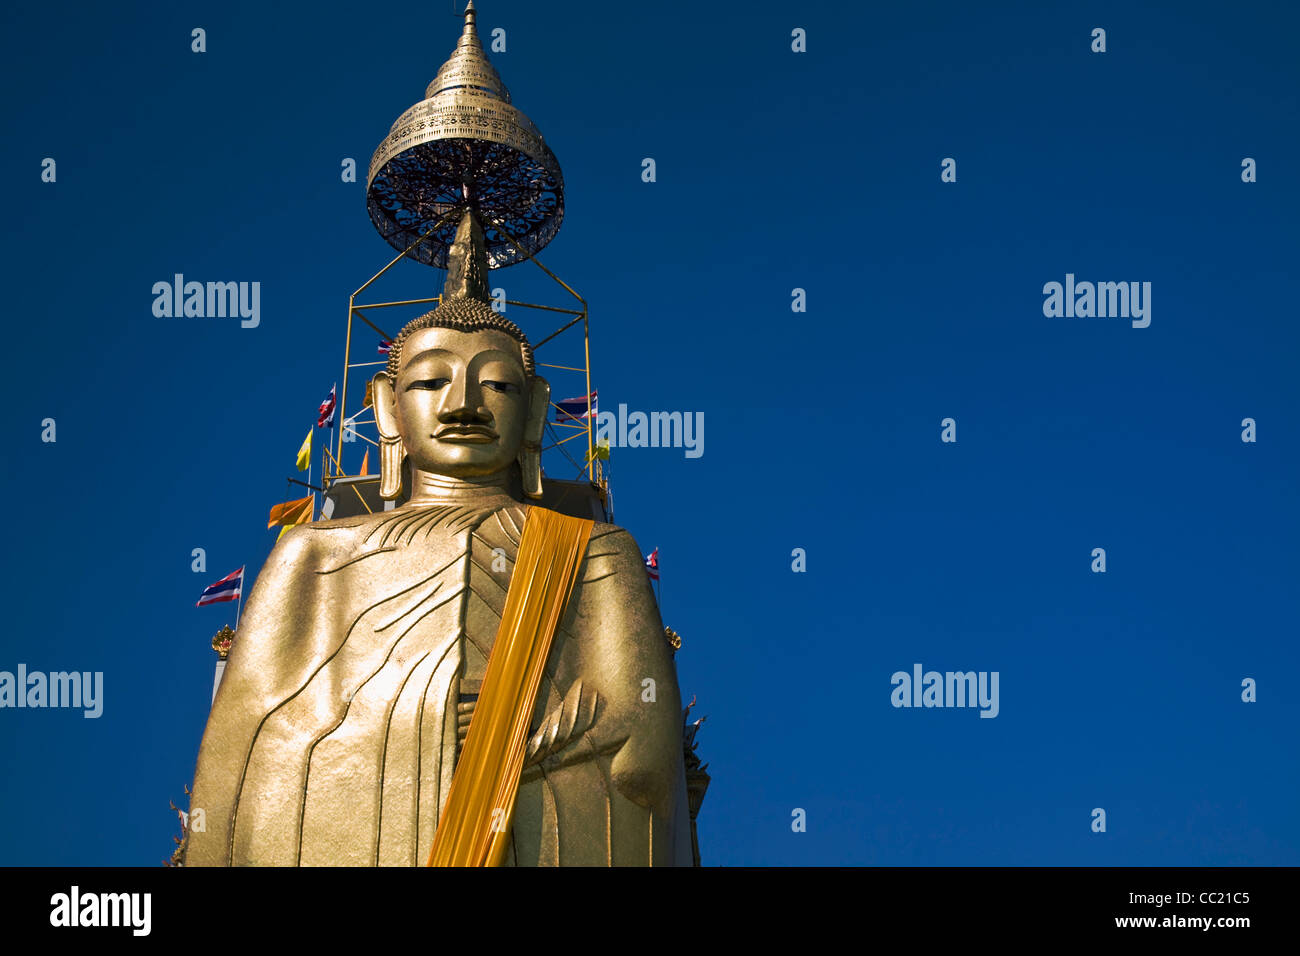 The standing Buddha at Wat Intharawihan, Bangkok, Thailand Stock Photo